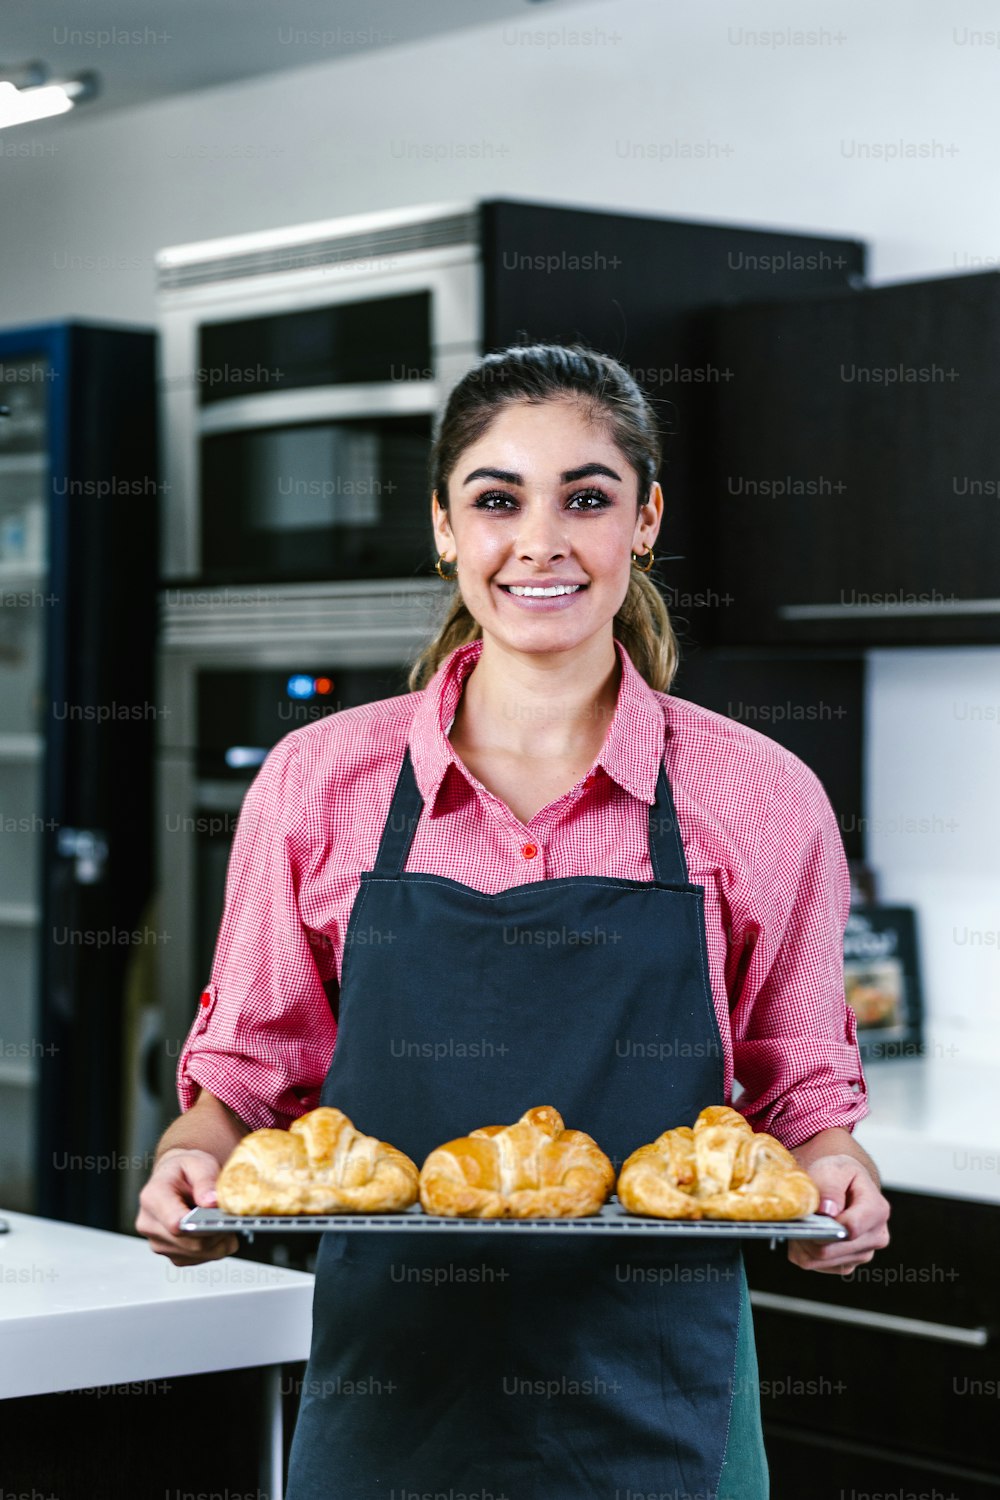 멕시코 라틴 아메리카의 부엌에서 오븐에서 크로와상을 굽는 젊은 라틴 여성